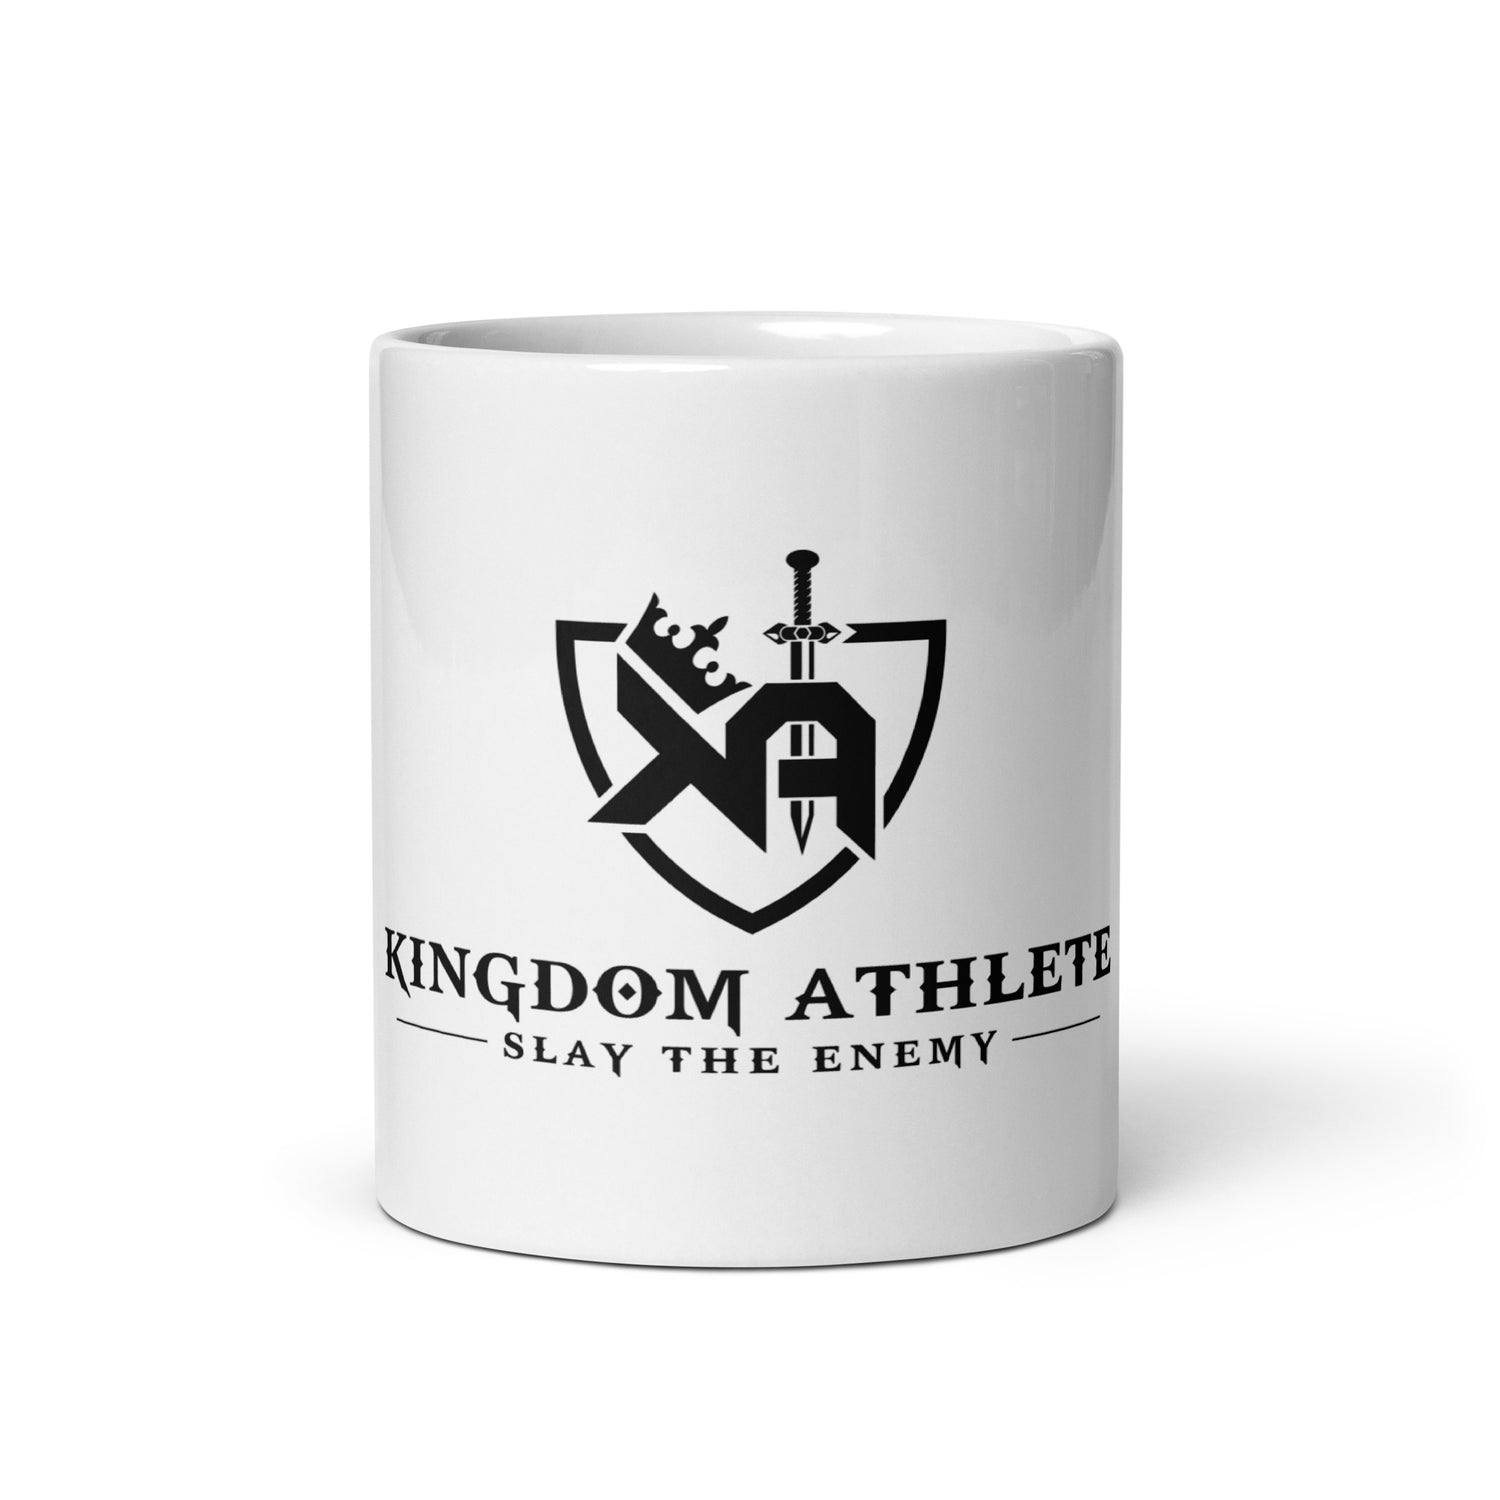 White glossy mug - kingdom athlete s